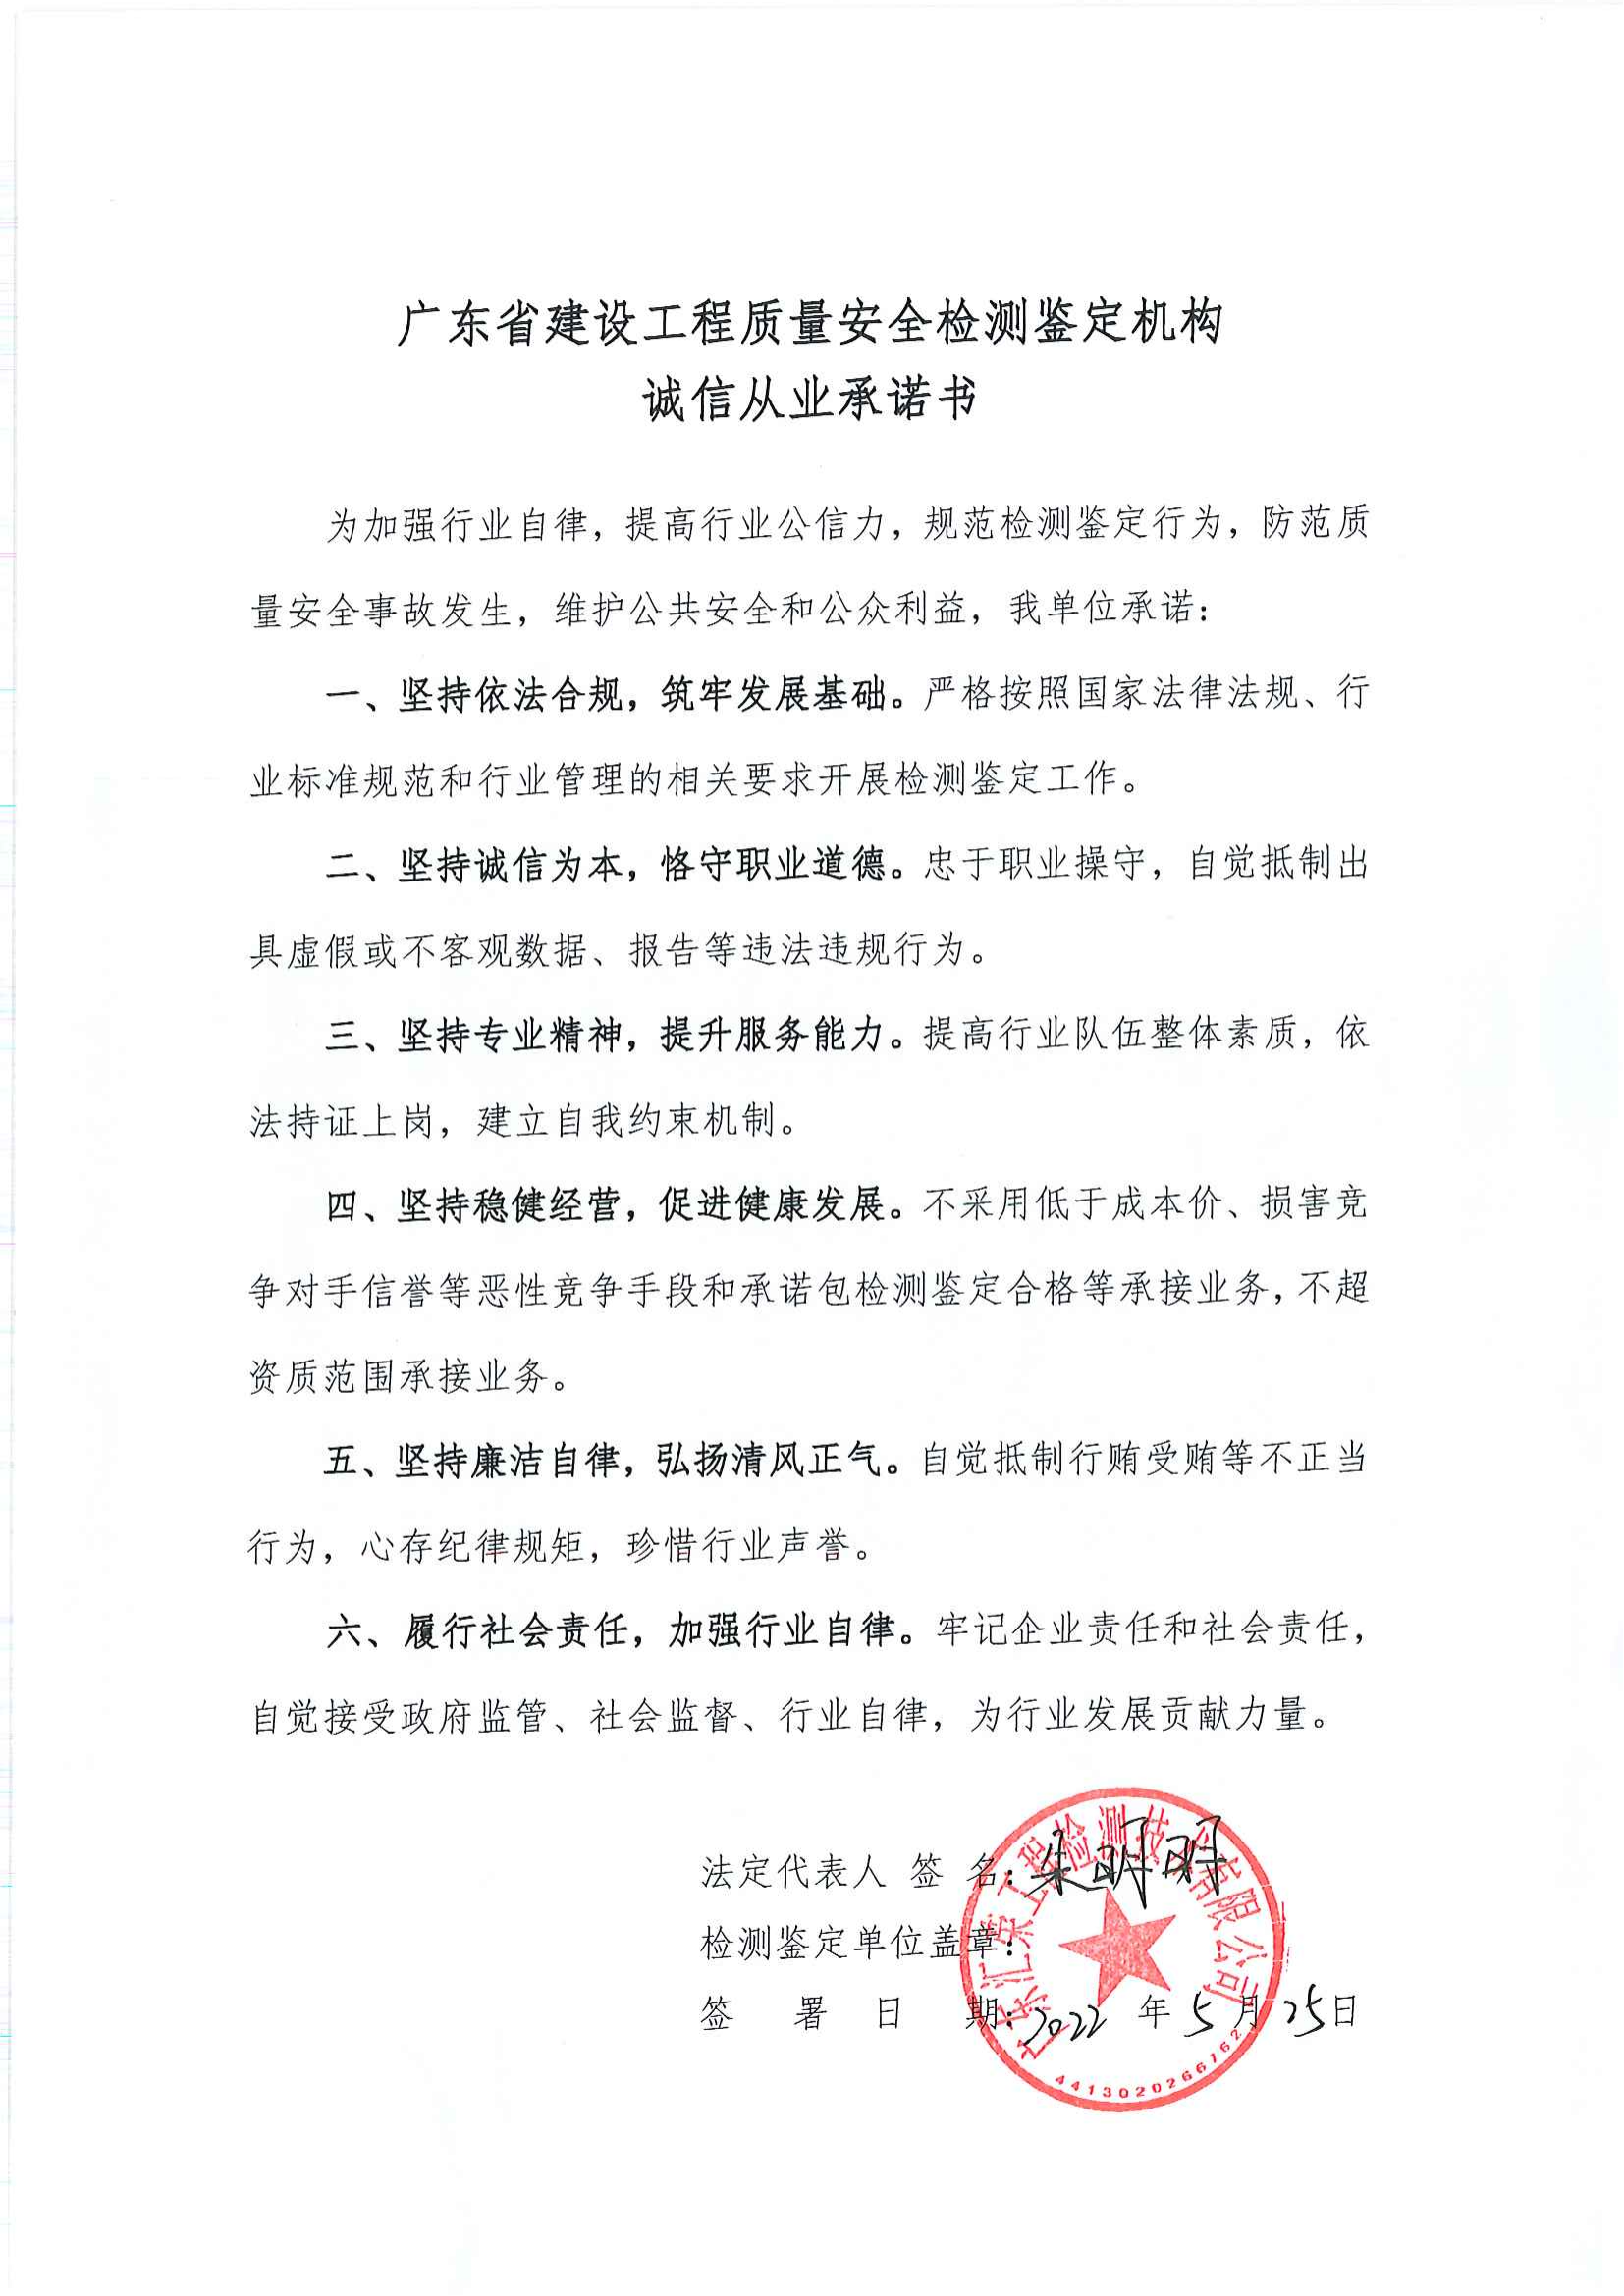 469广东汇荣工程检测技术有限公司诚信从业承诺书_00.png